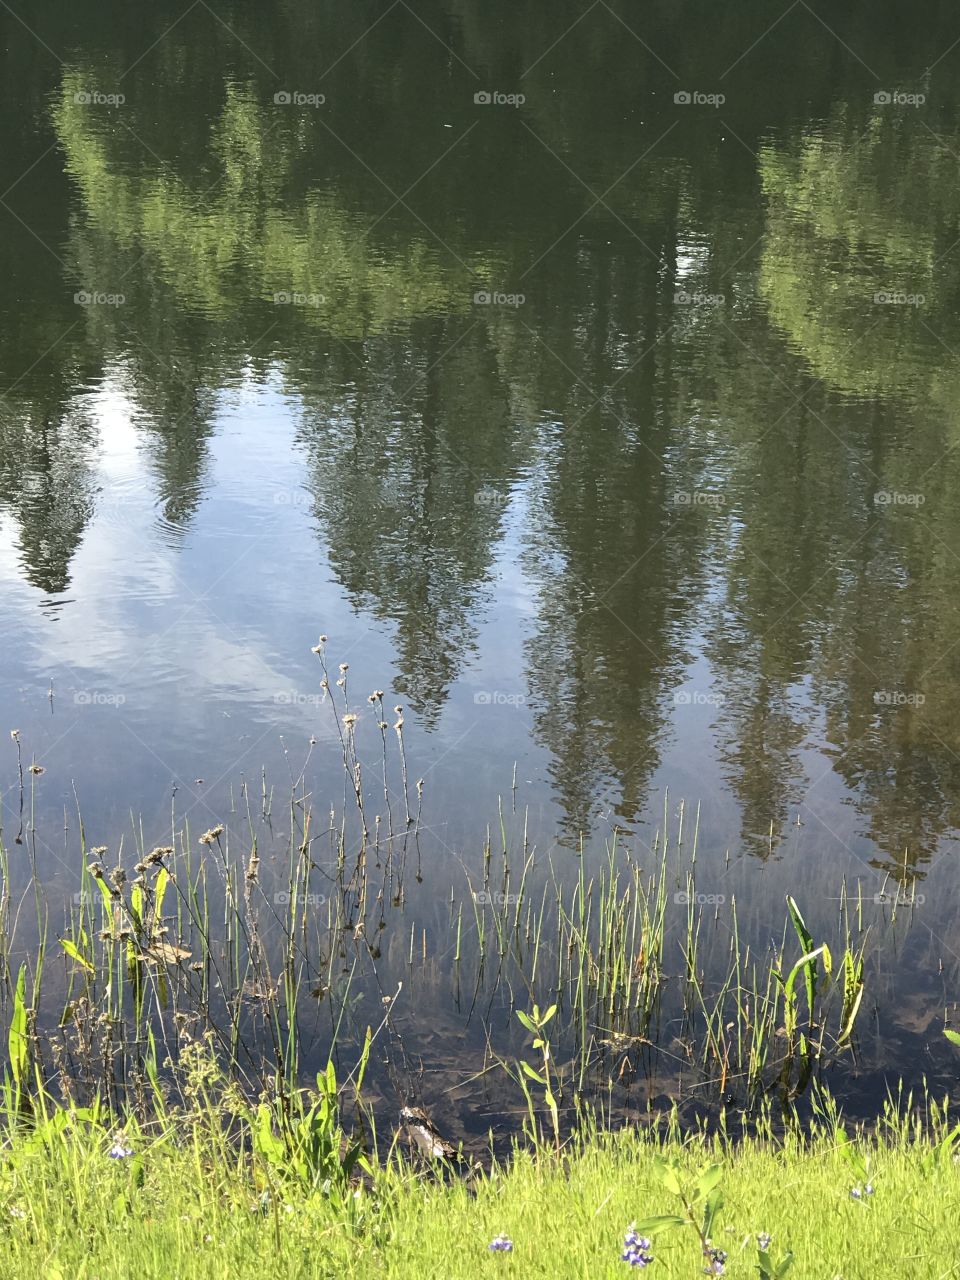 Pond scene looks like impressionistic painting 